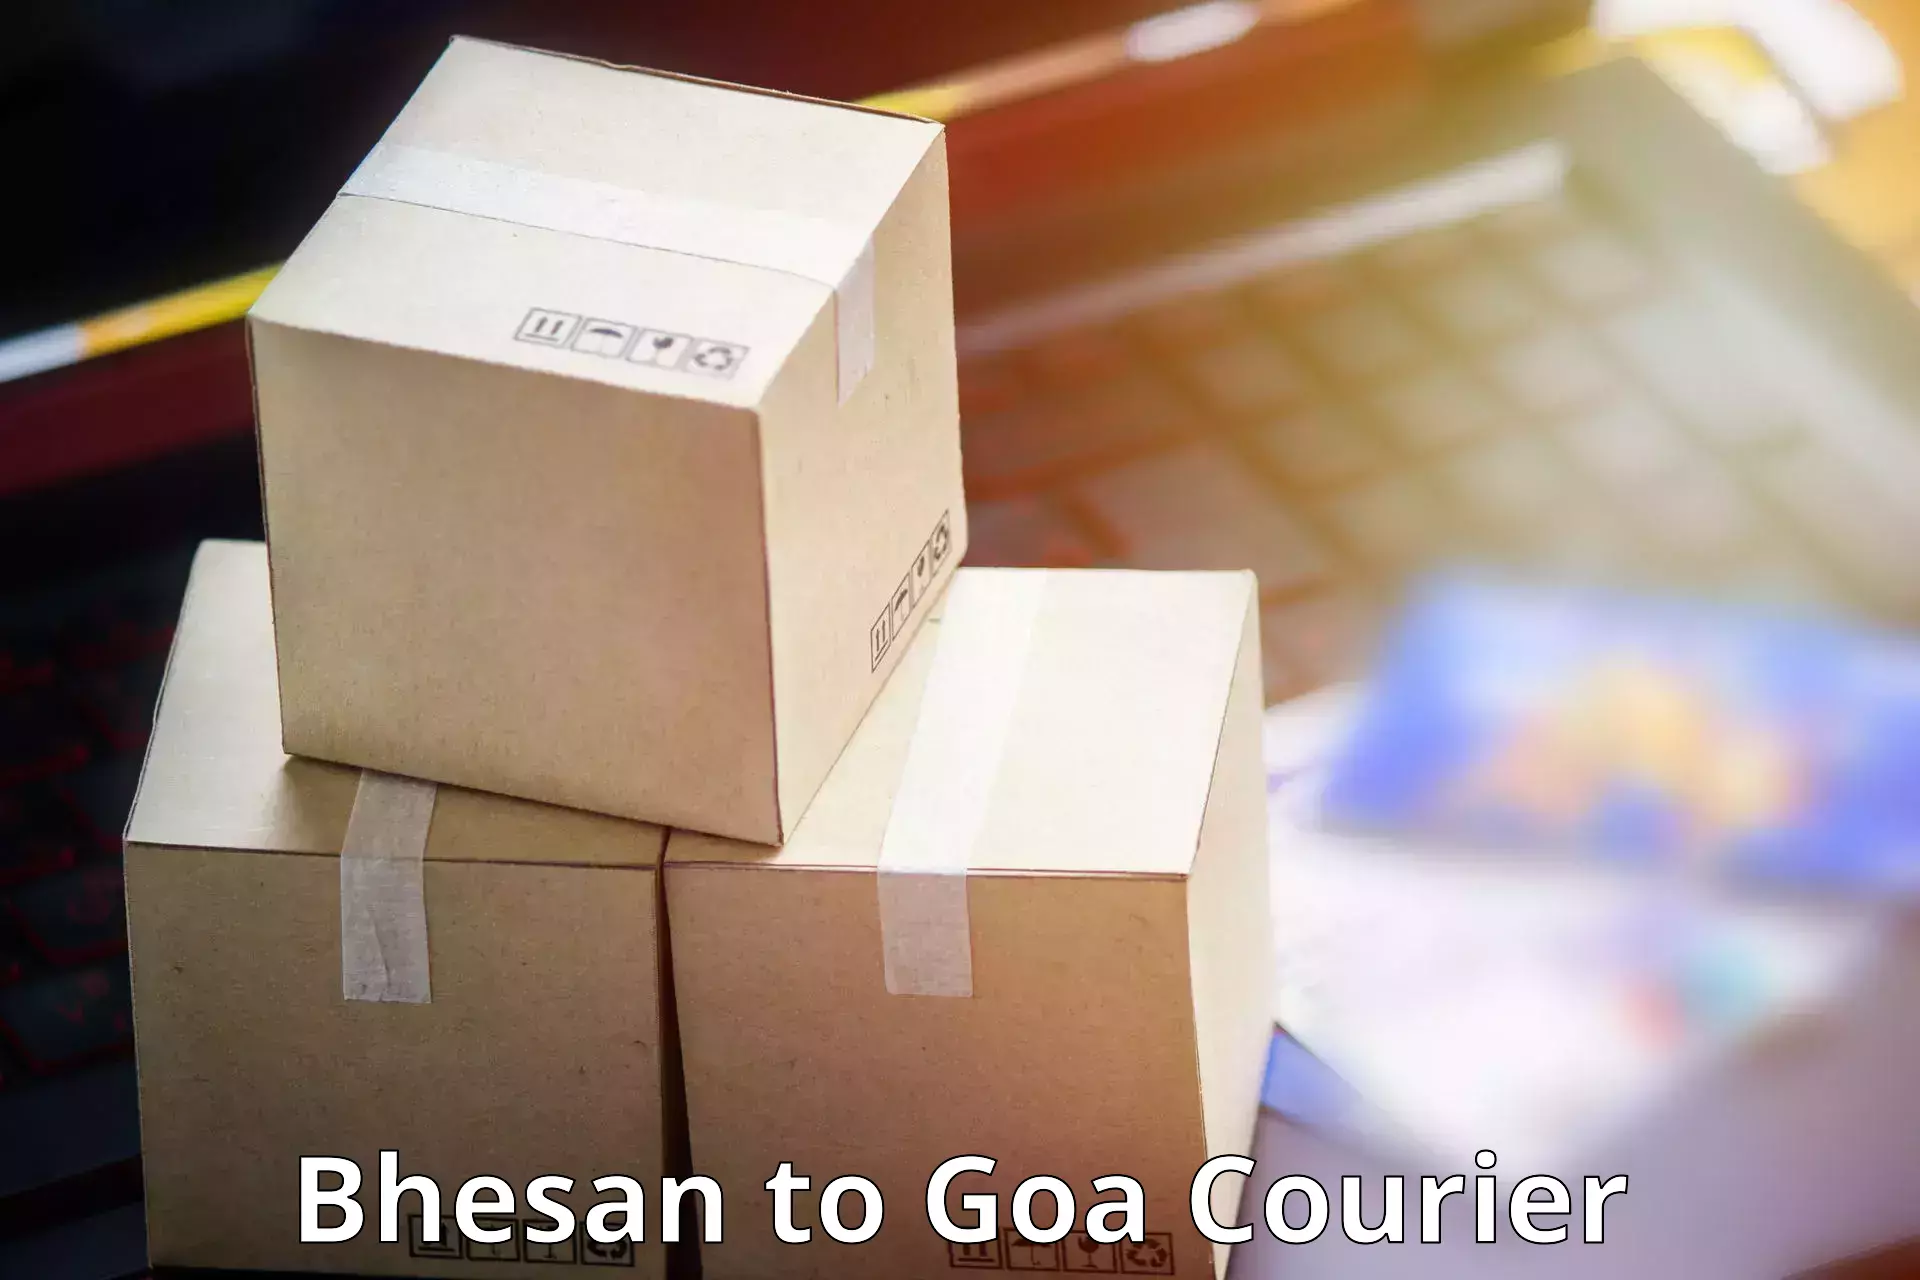 24/7 courier service Bhesan to Mormugao Port